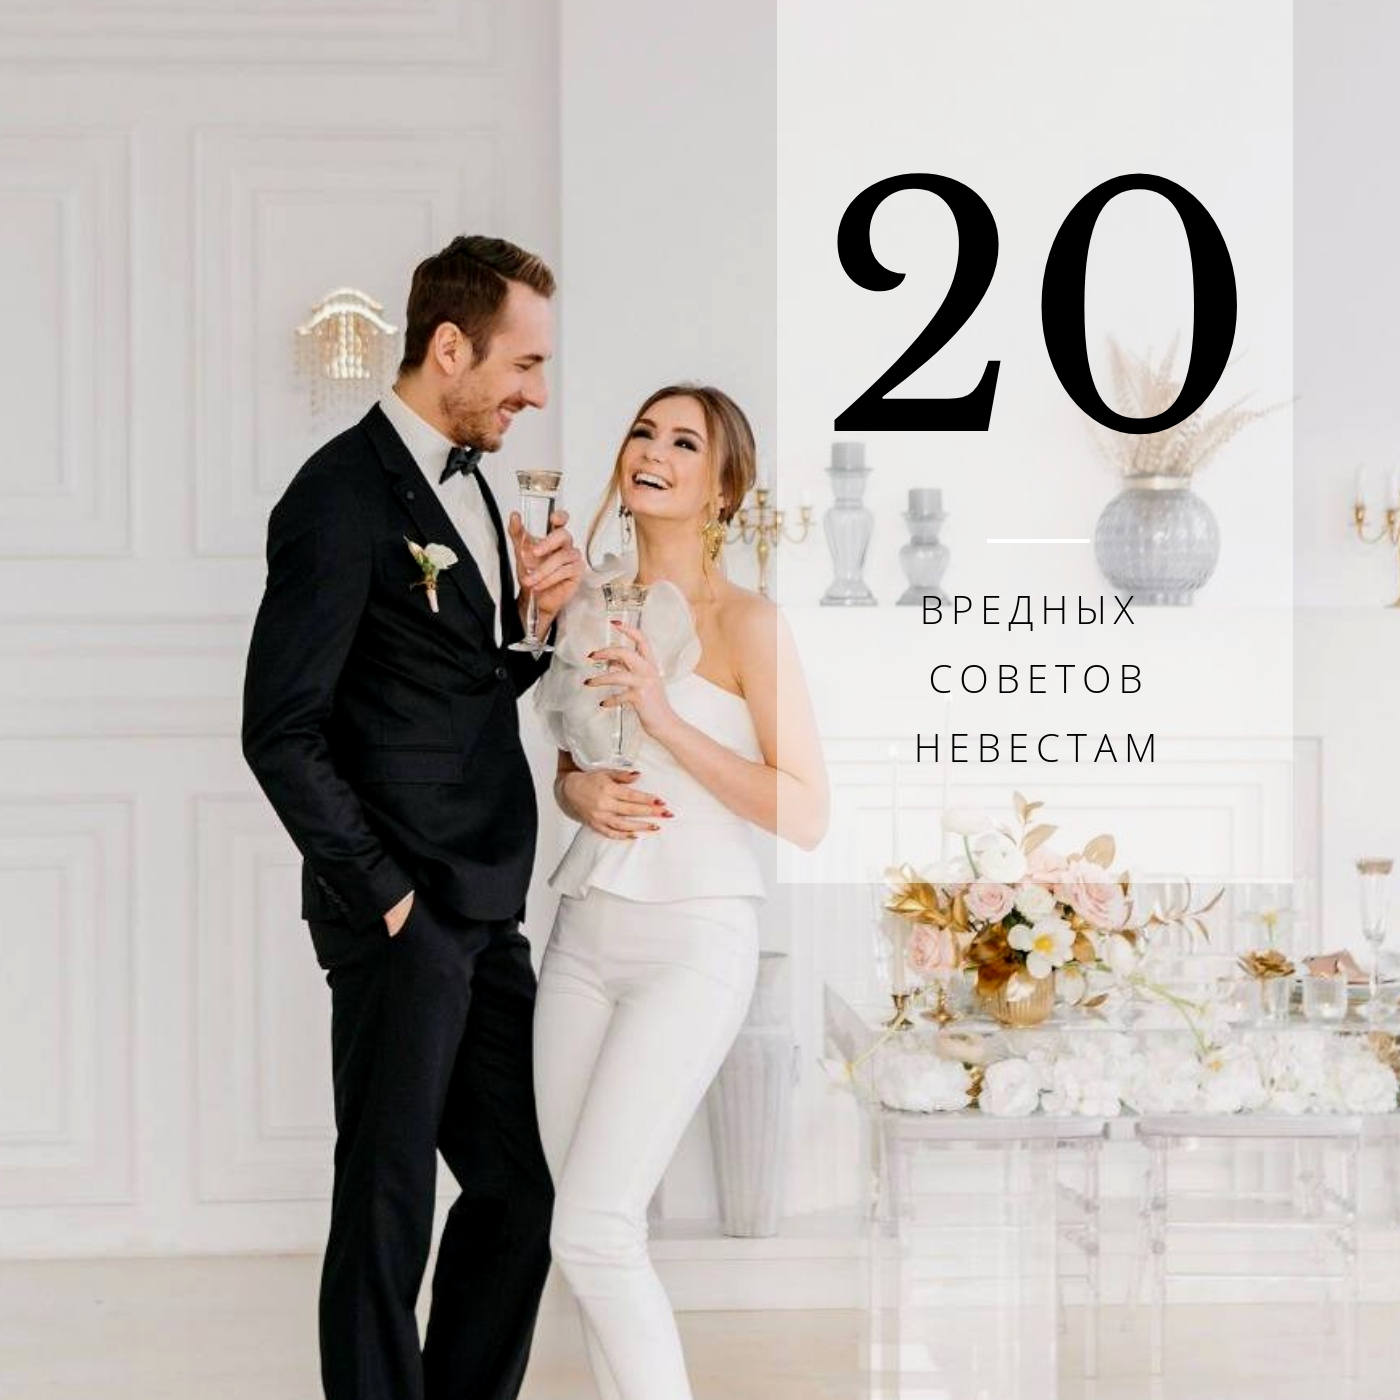 20 вредных советов невестам